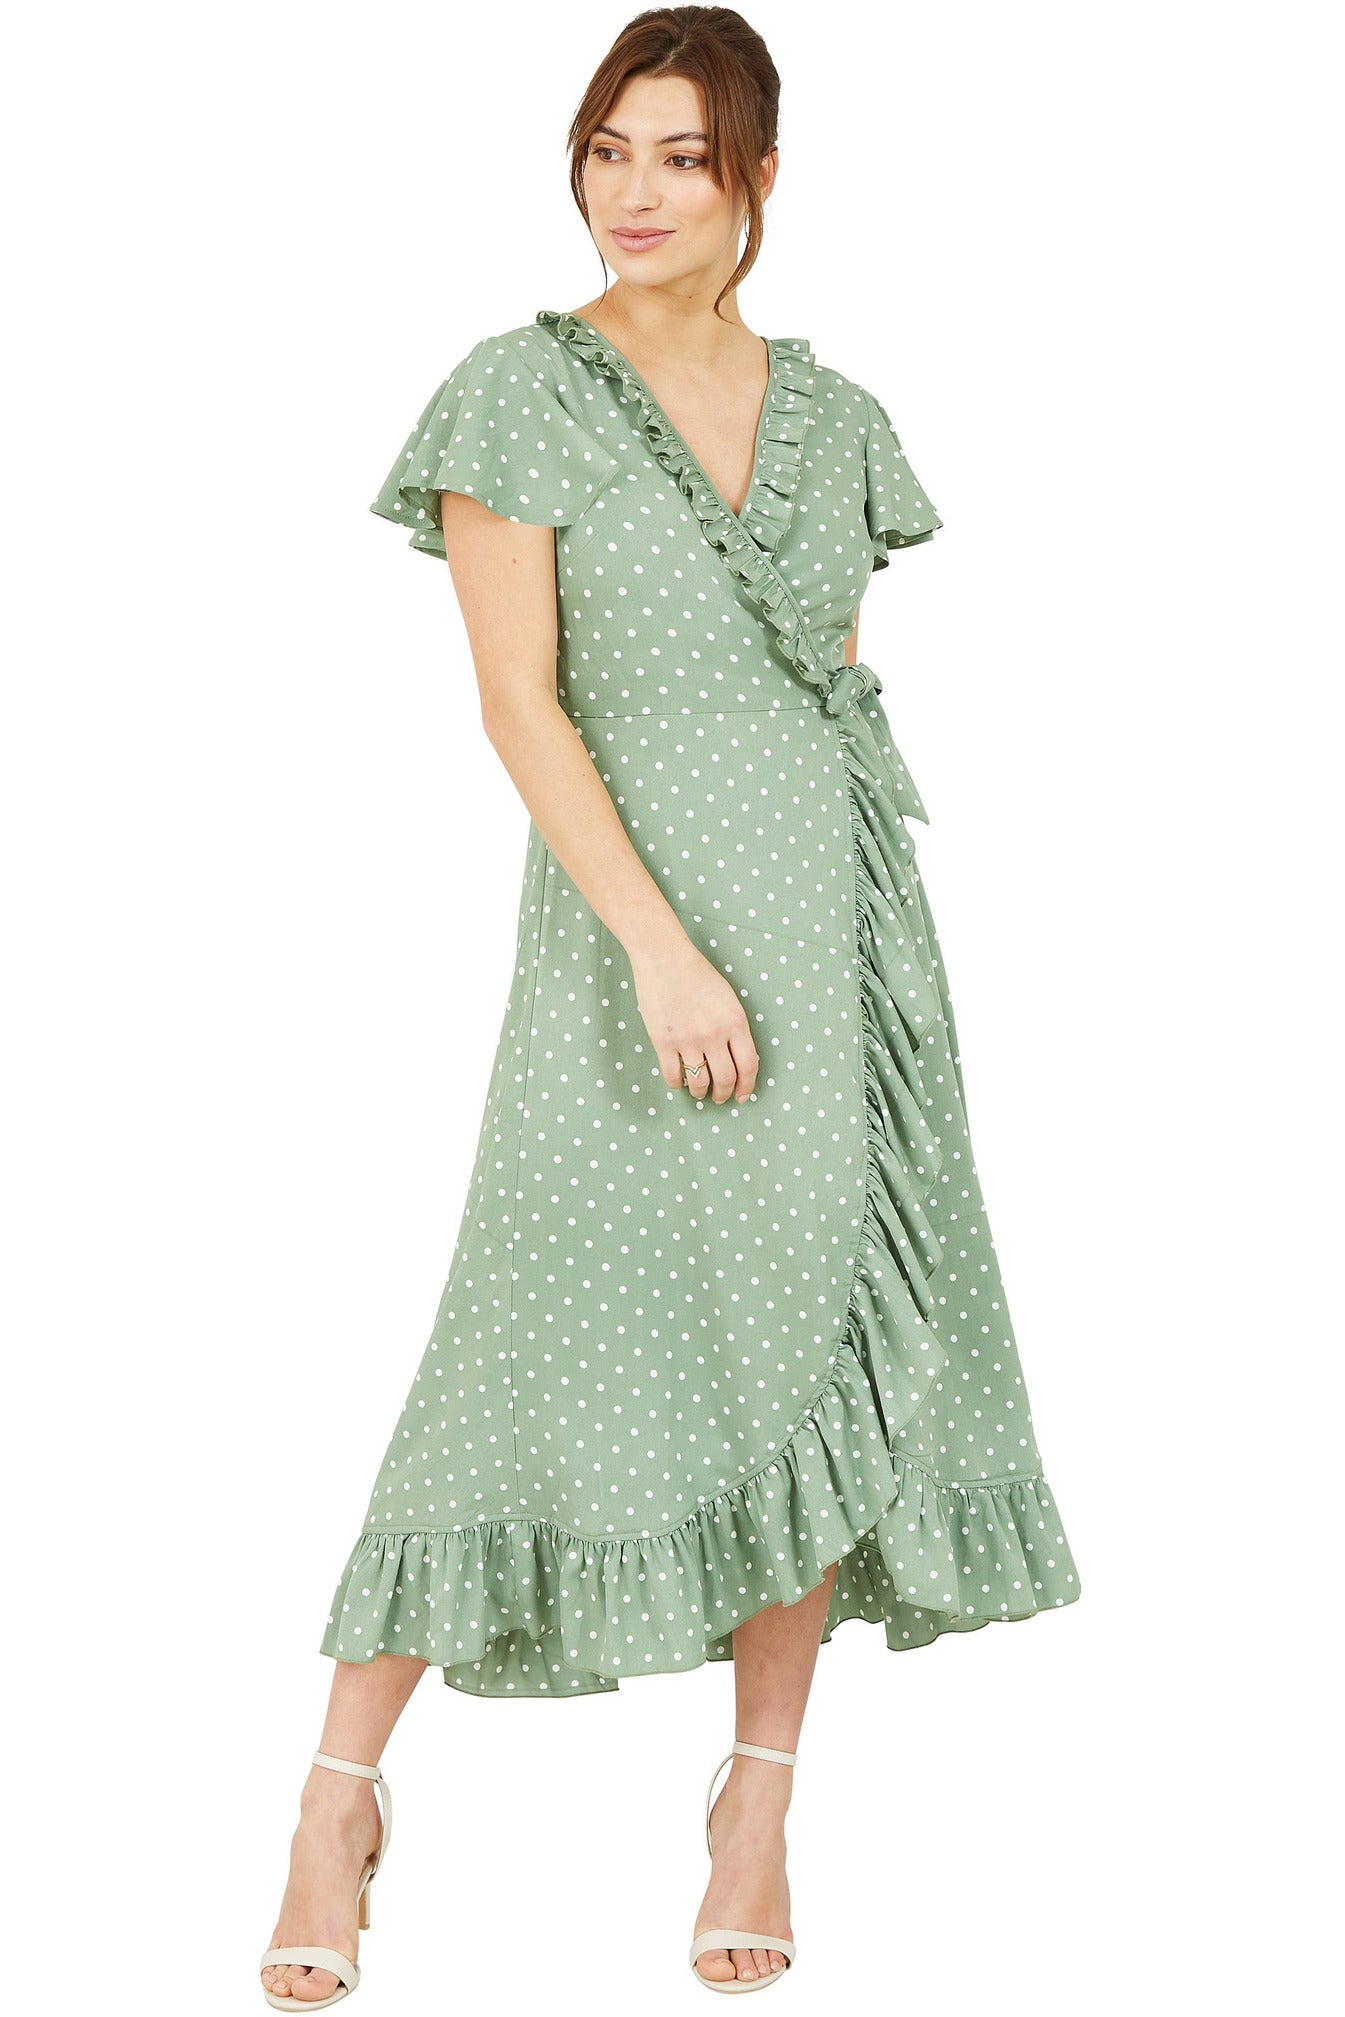 Green Polkadot Frill Wrap Dress YM3264